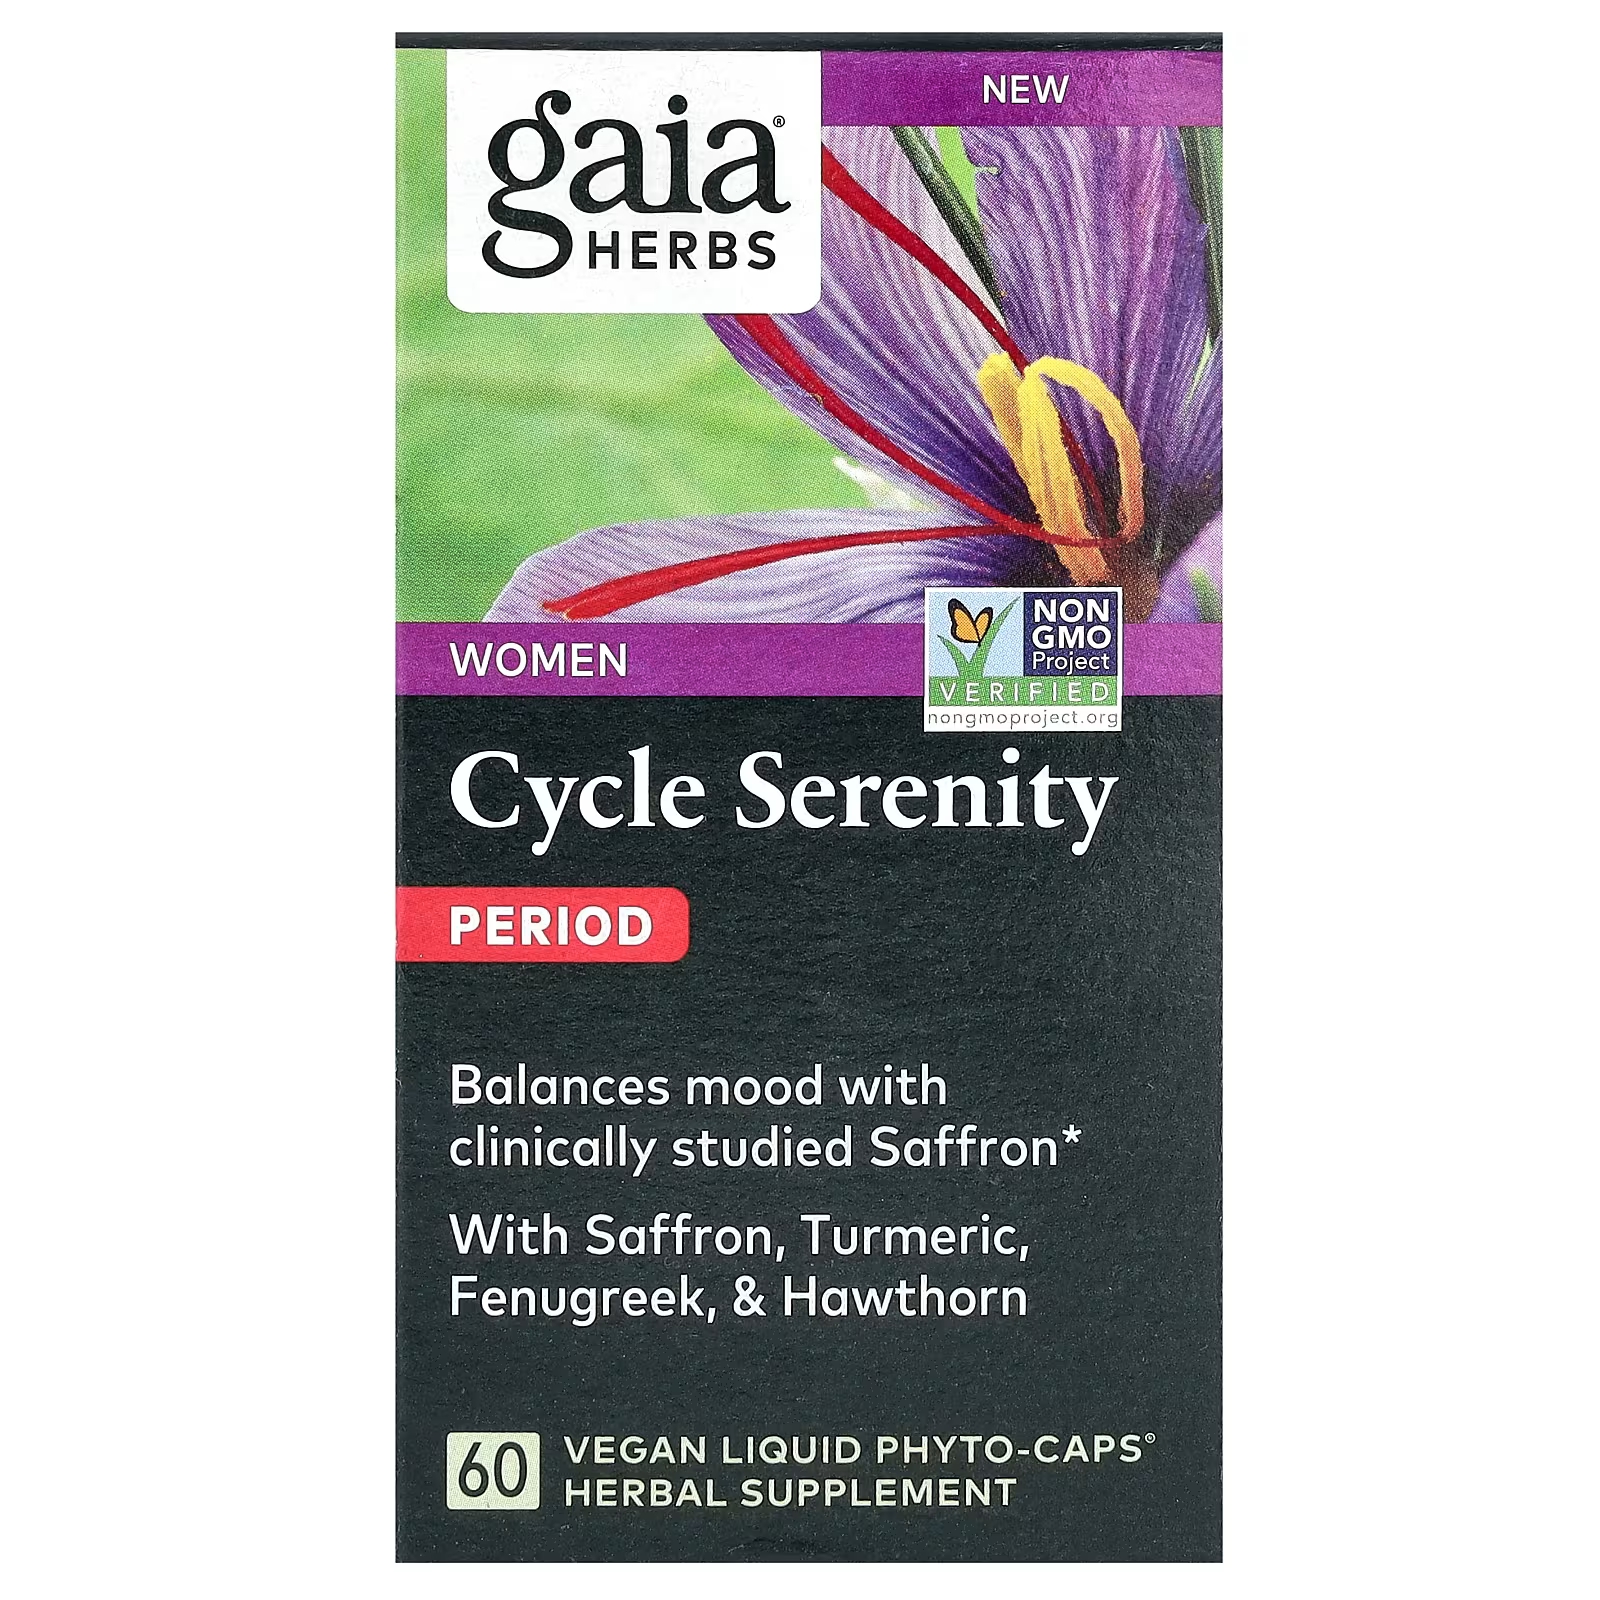 Растительная добавка Gaia Herbs Women Cycle Serenity Period, 60 фитокапсул растительная добавка gaia herbs microbiome cleanse 60 жидких фитокапсул